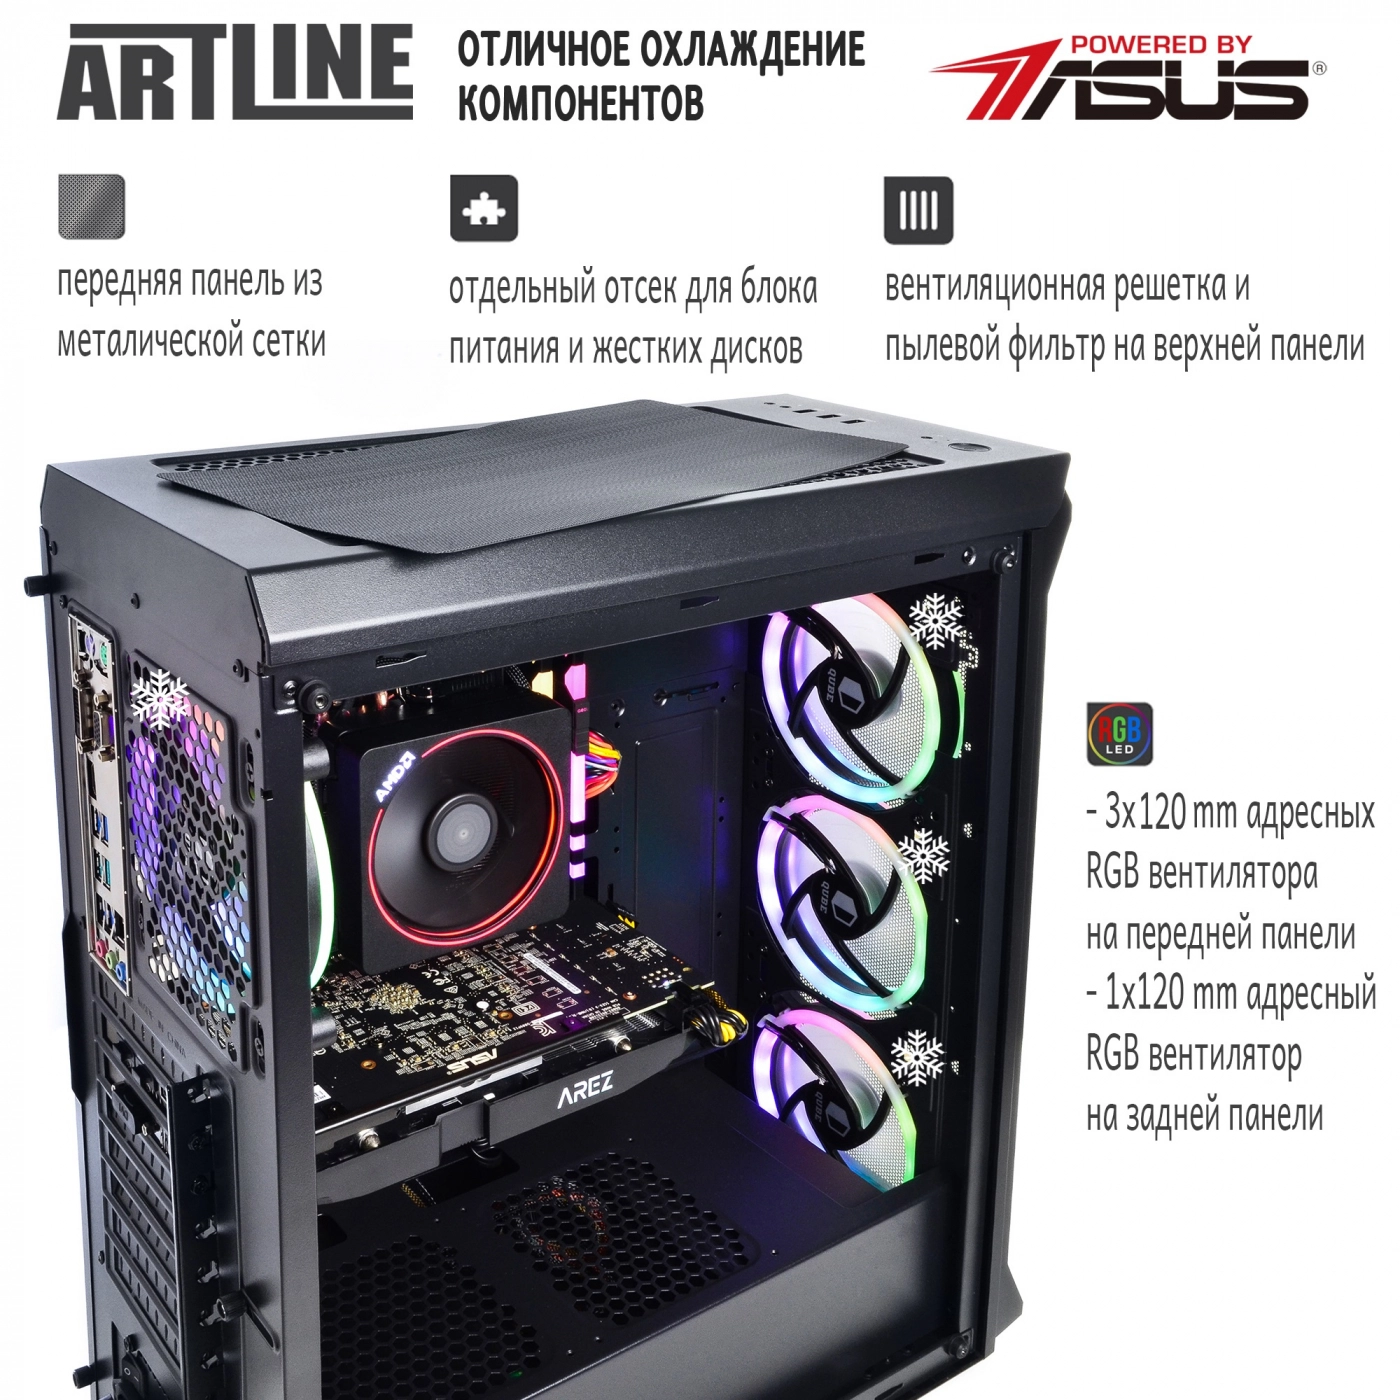 Купить Компьютер ARTLINE Gaming X87v15 - фото 2